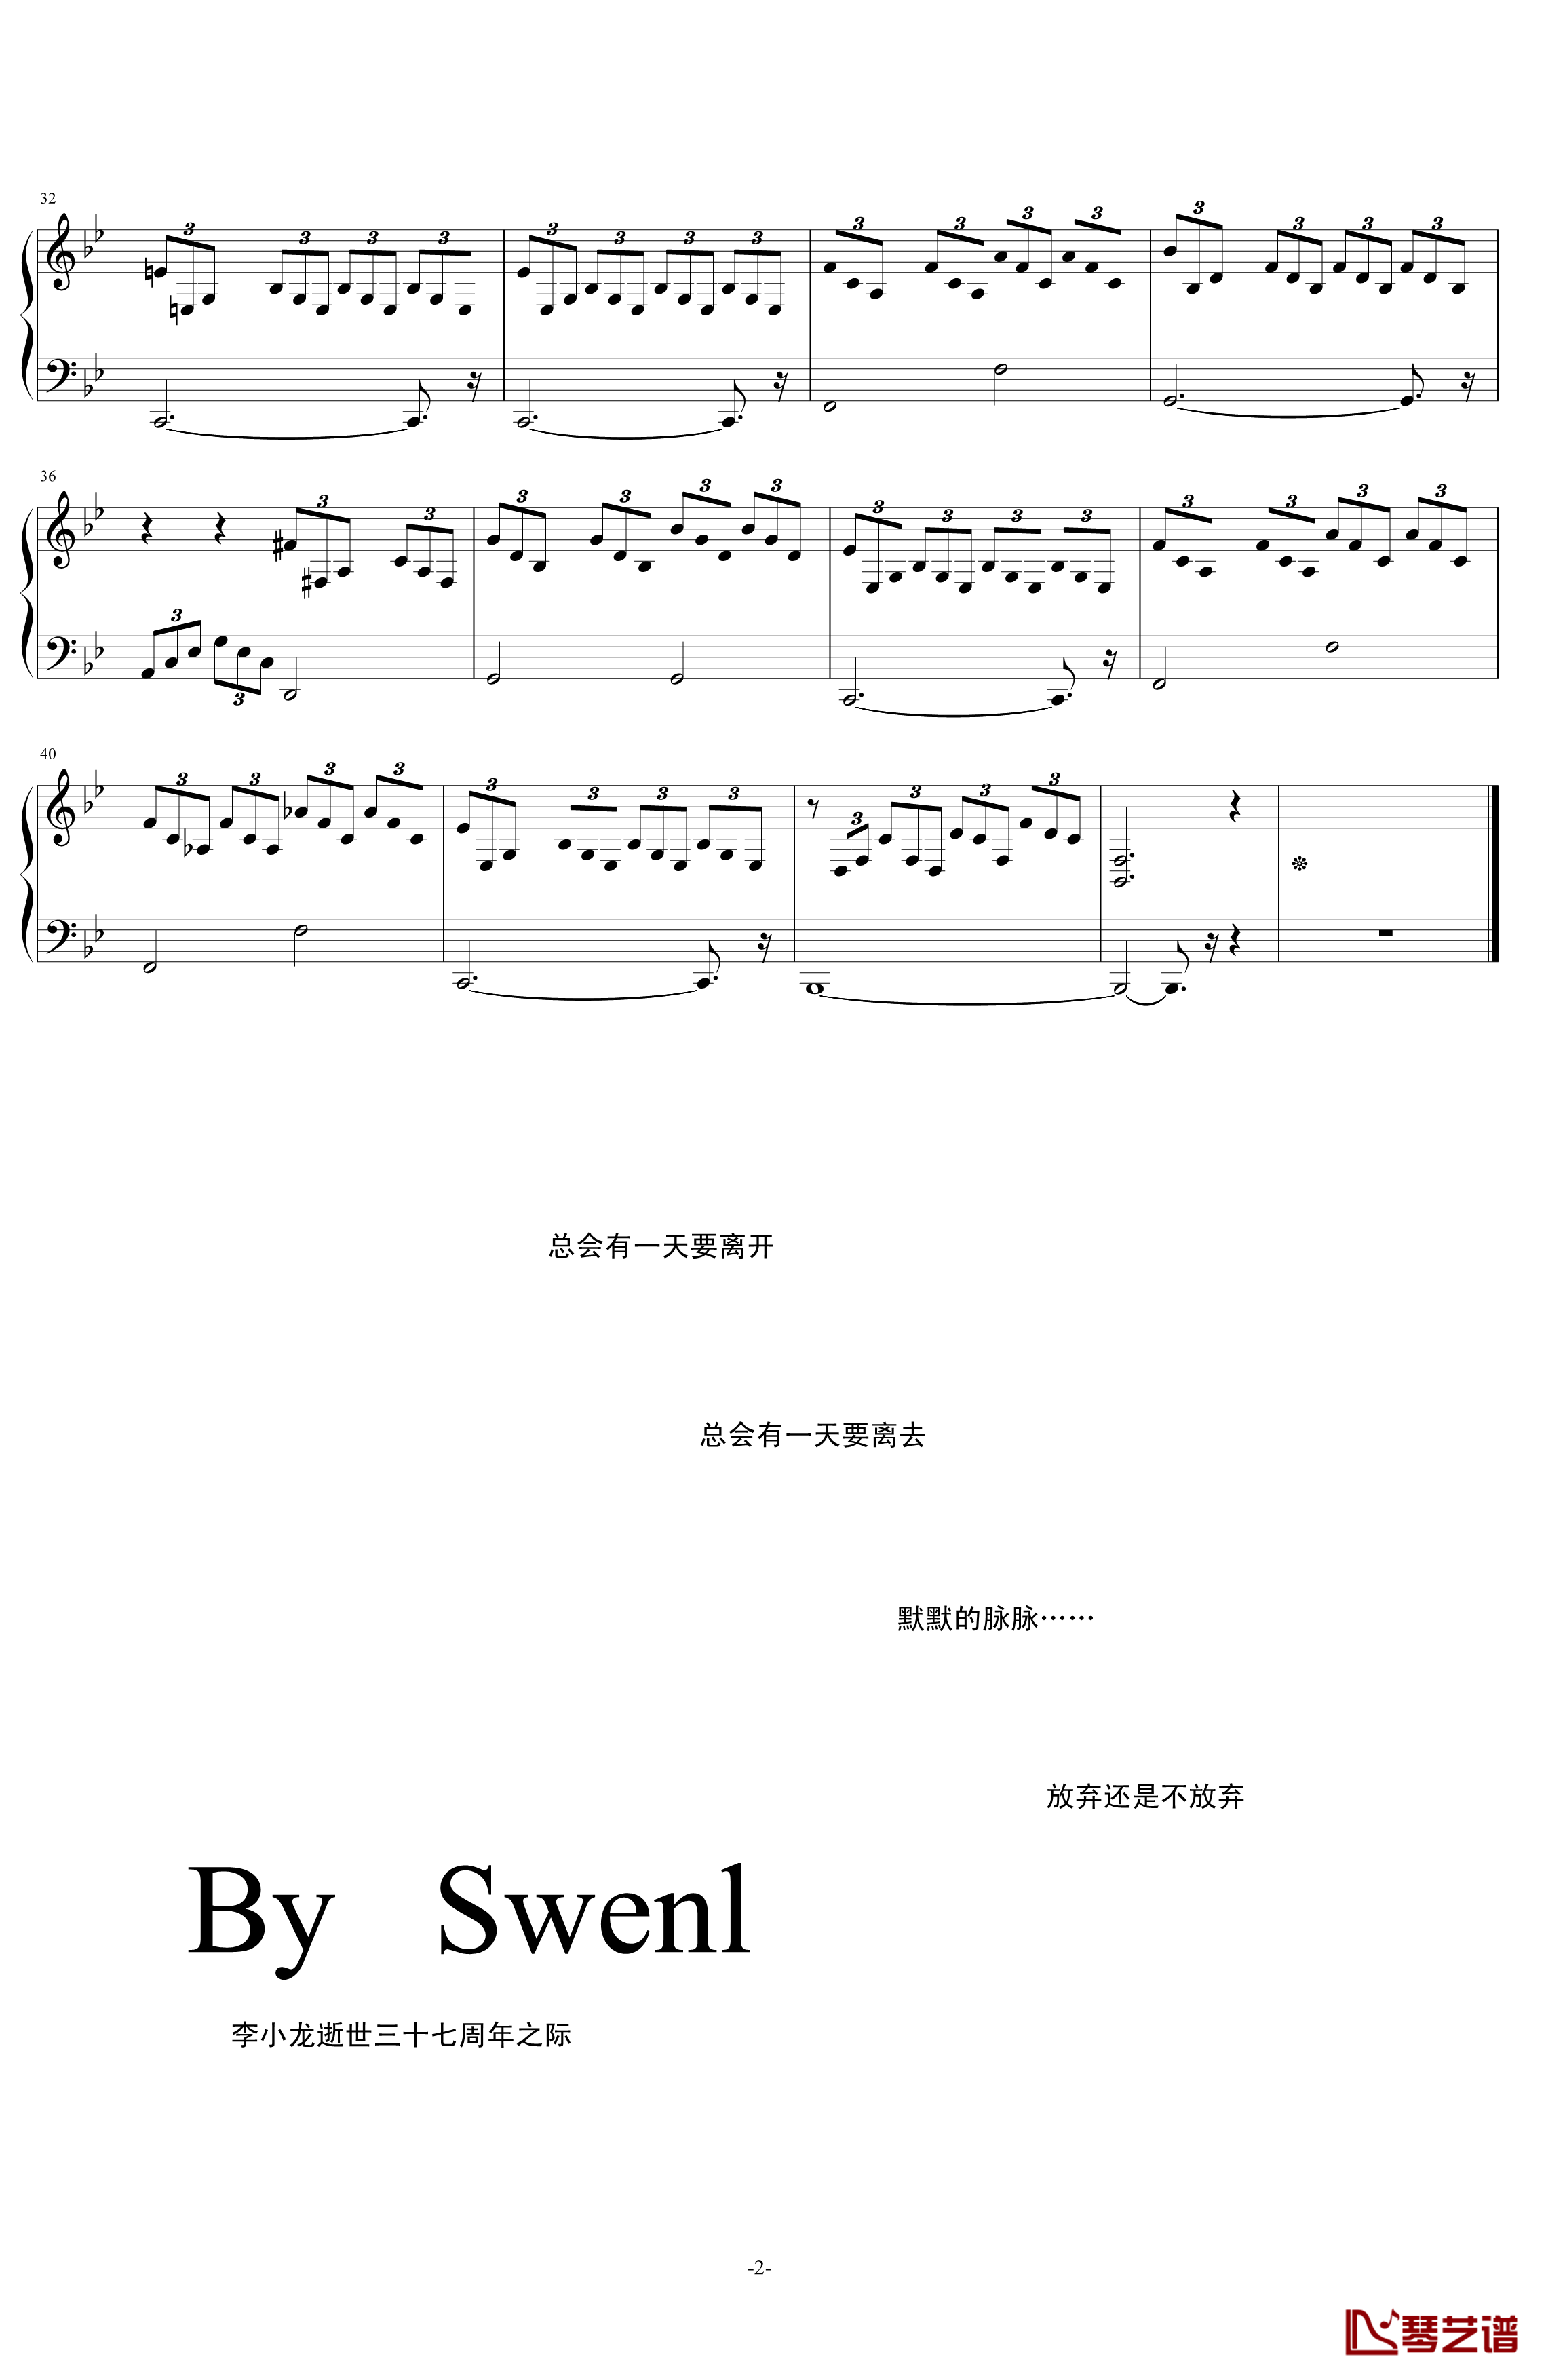 三连音练习曲钢琴谱-初学者简单版-swenl2